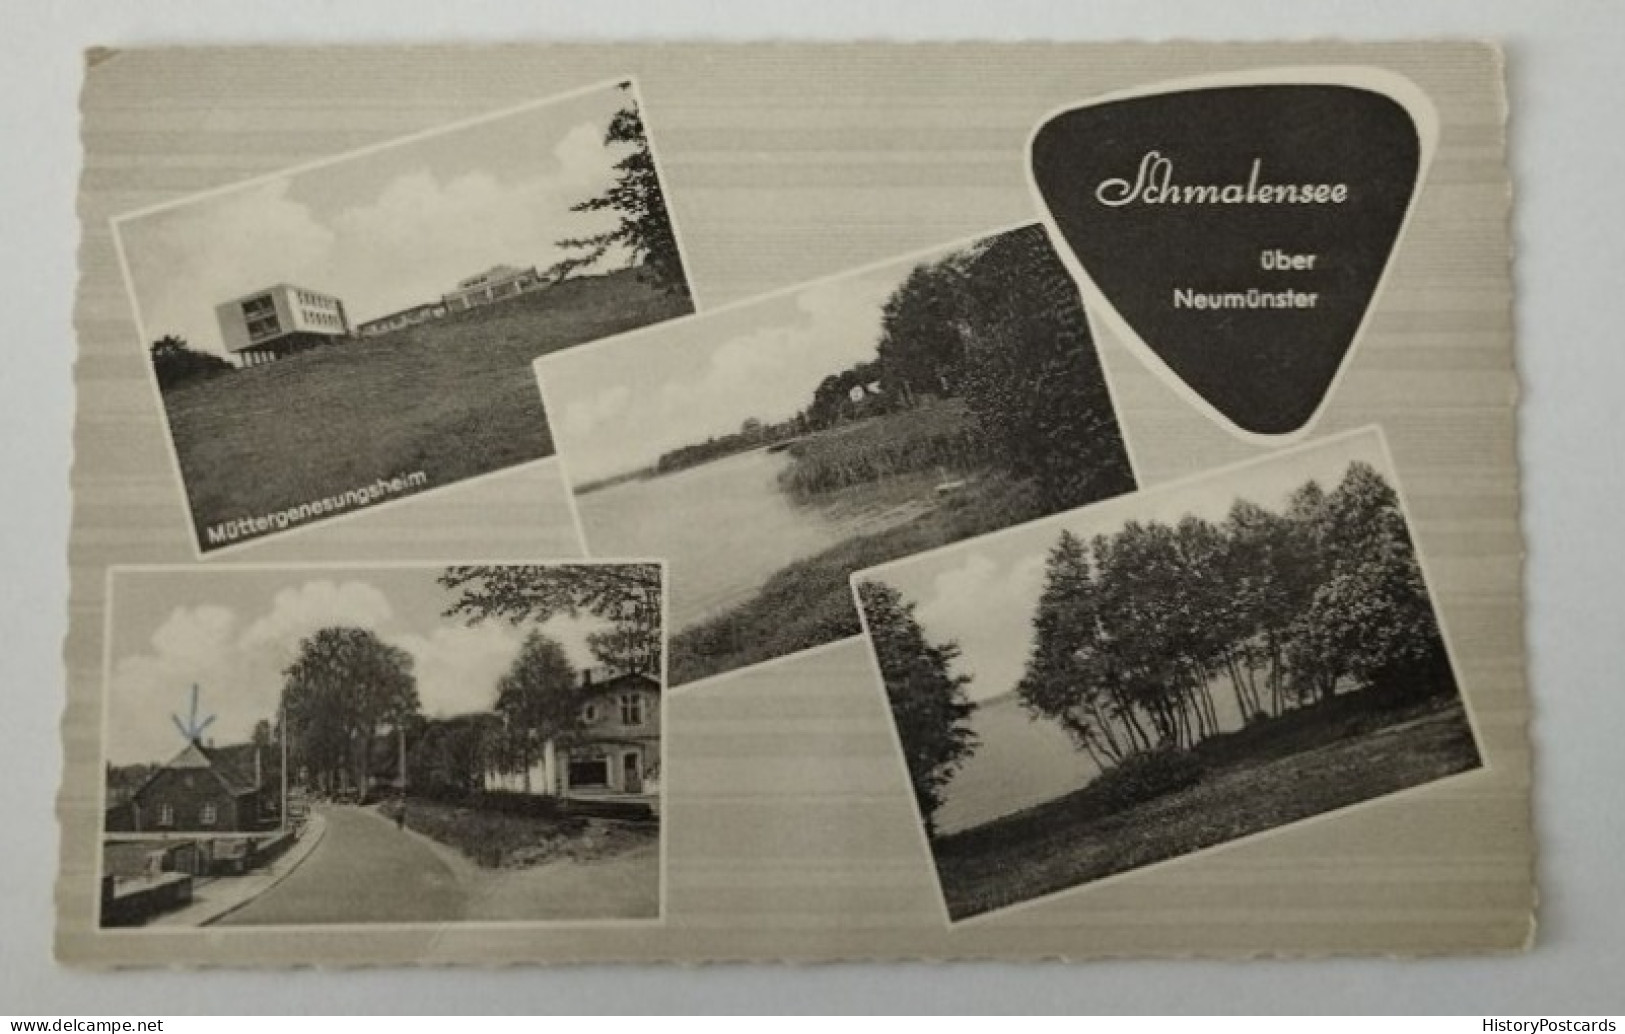 Schmalensee über Neumünster, 1969 - Neumünster